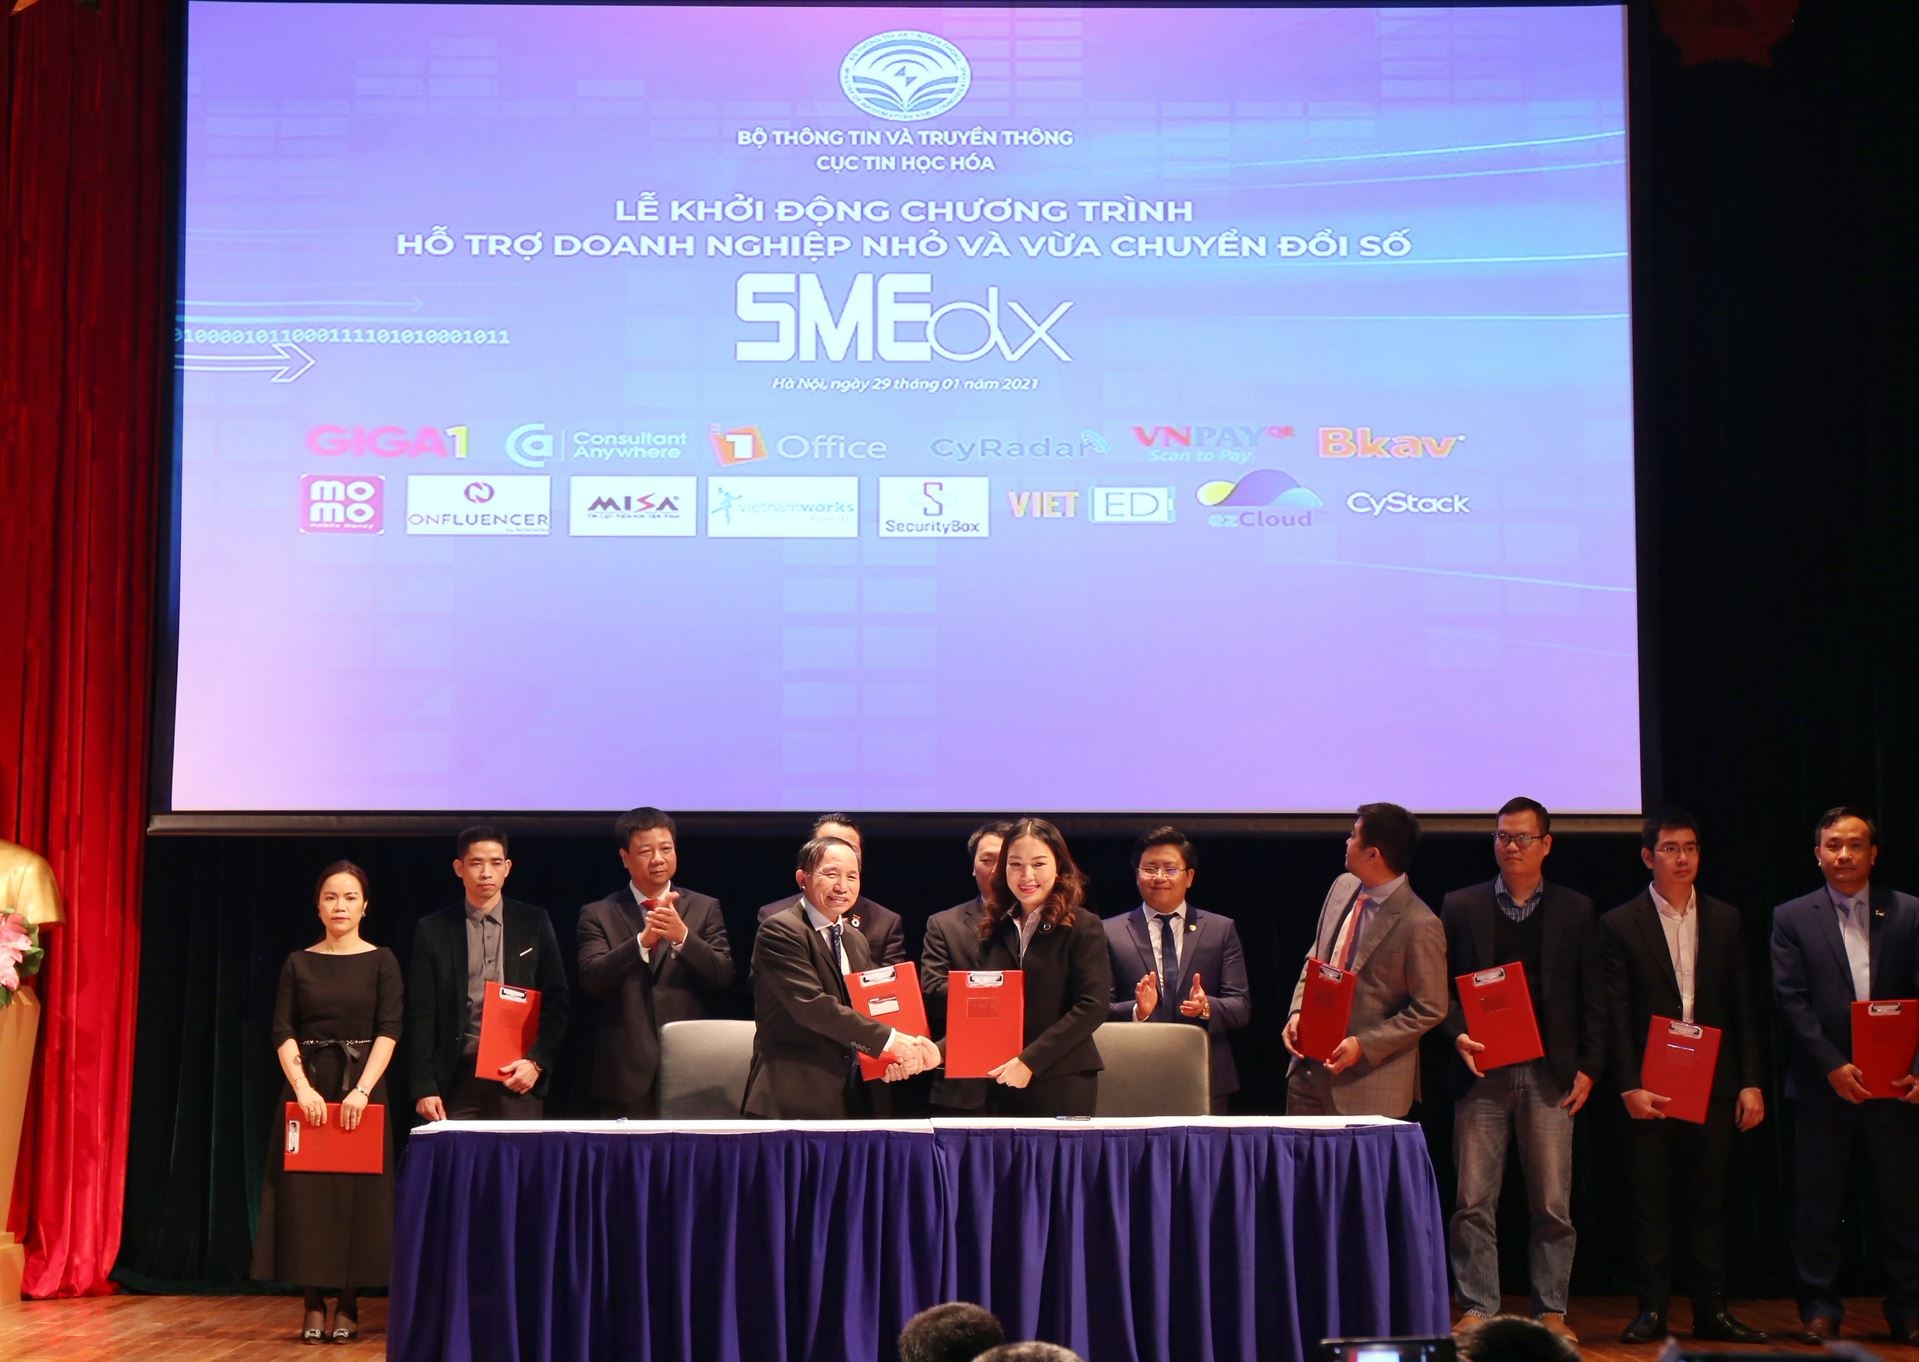 Khởi động Chương trình hỗ trợ doanh nghiệp nhỏ và vừa chuyển đổi số SMEdx